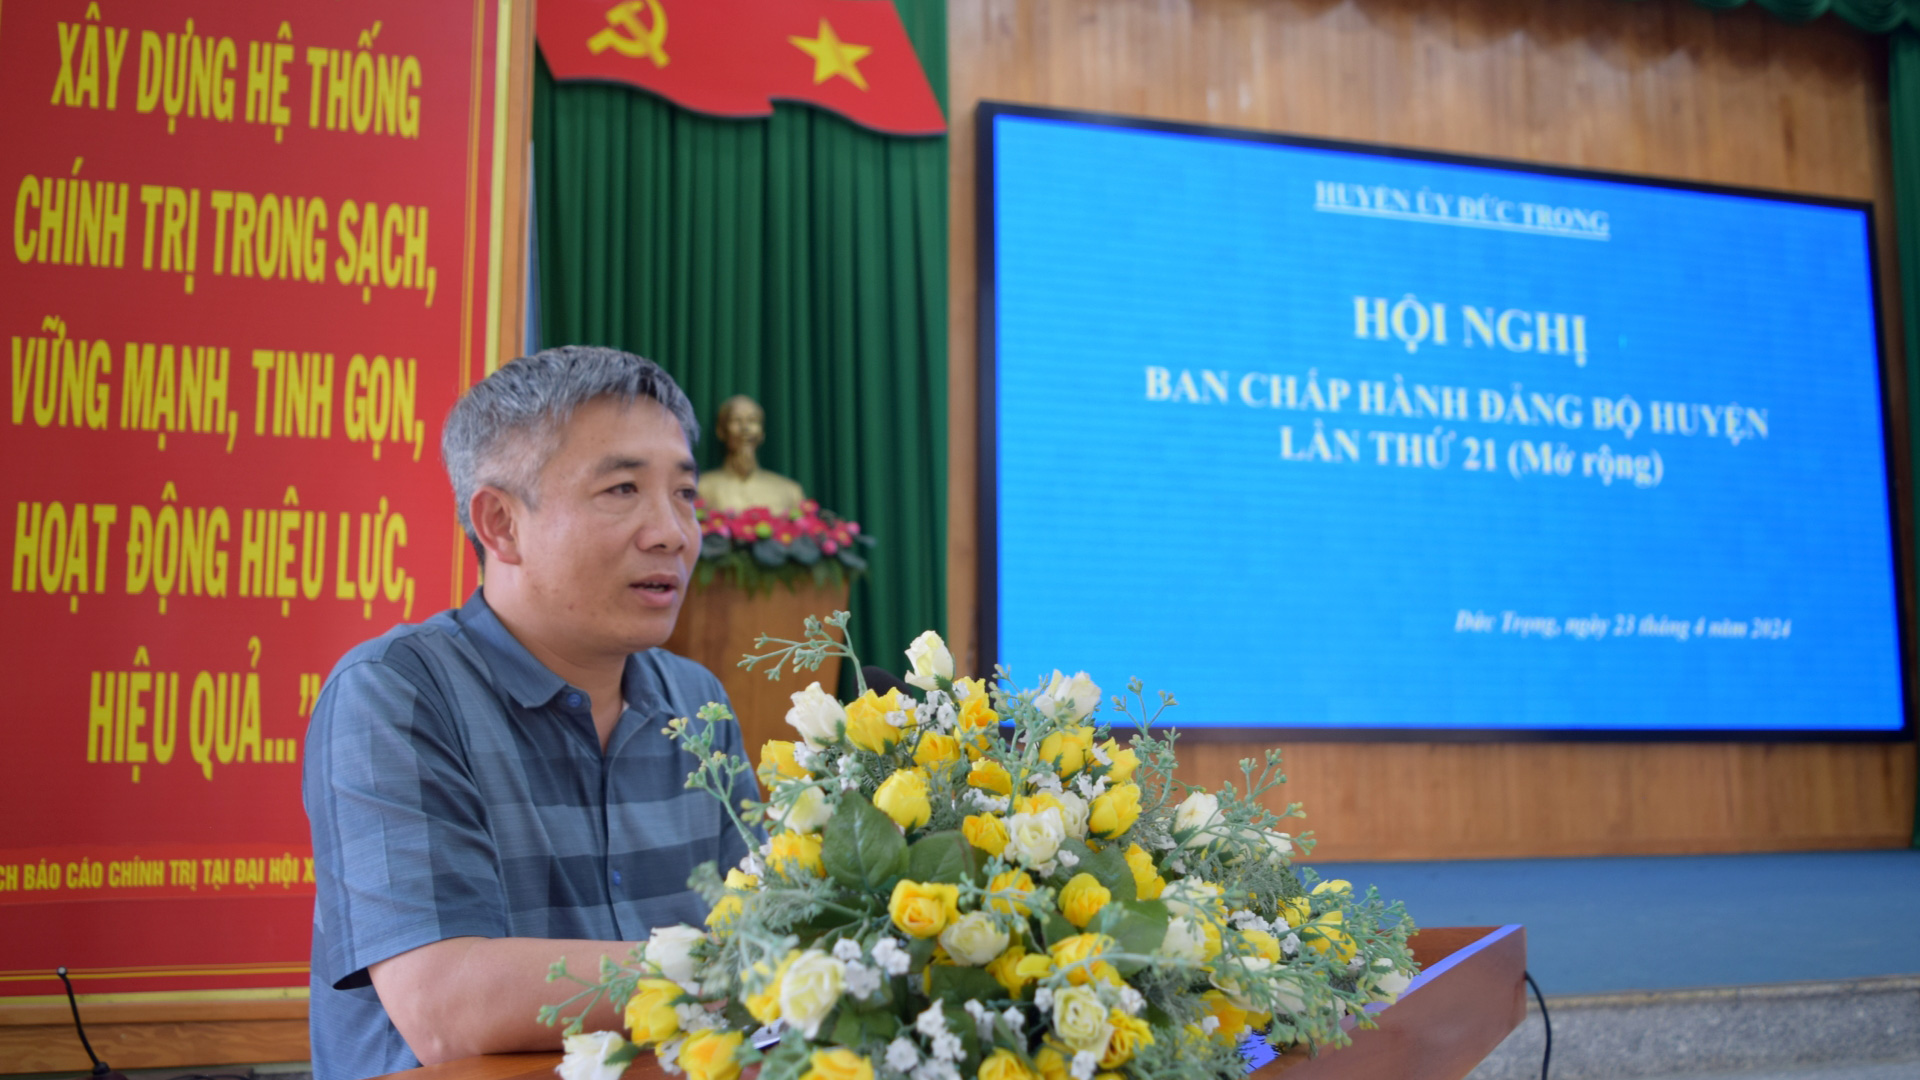 Đồng chí Bùi Sơn Điền - Bí thư Huyện ủy, phát biểu tại hội nghị